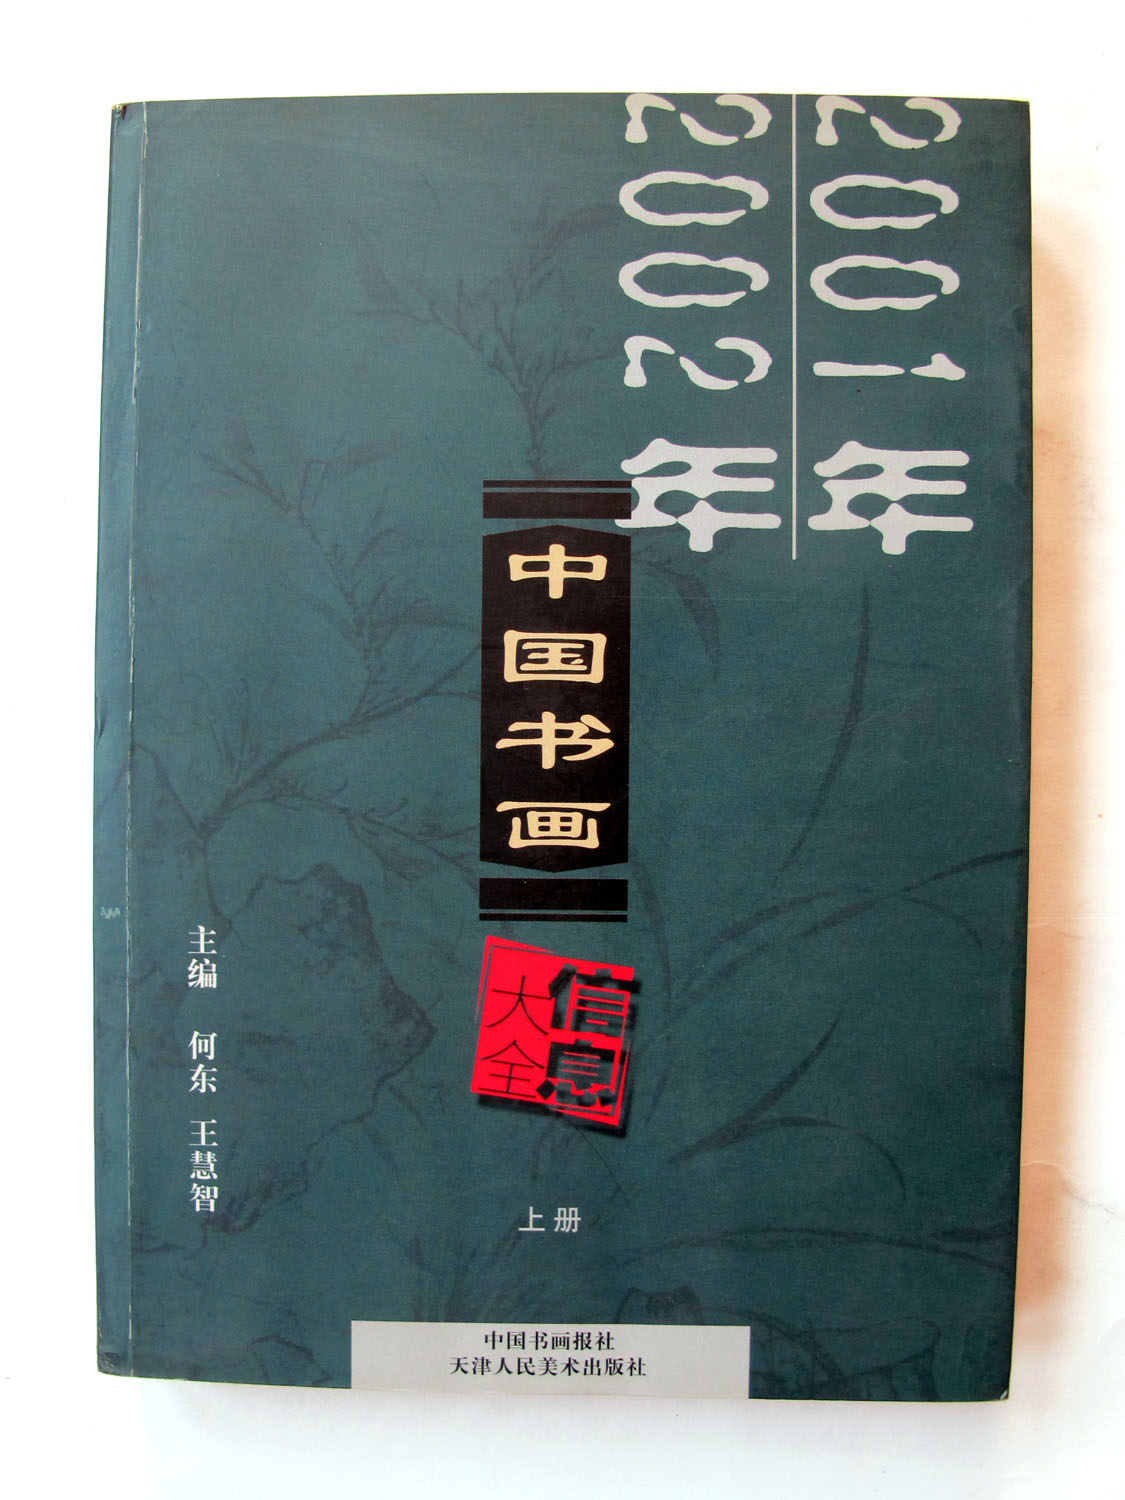 2001年2002年中国书画信息大全 中国书画报社 